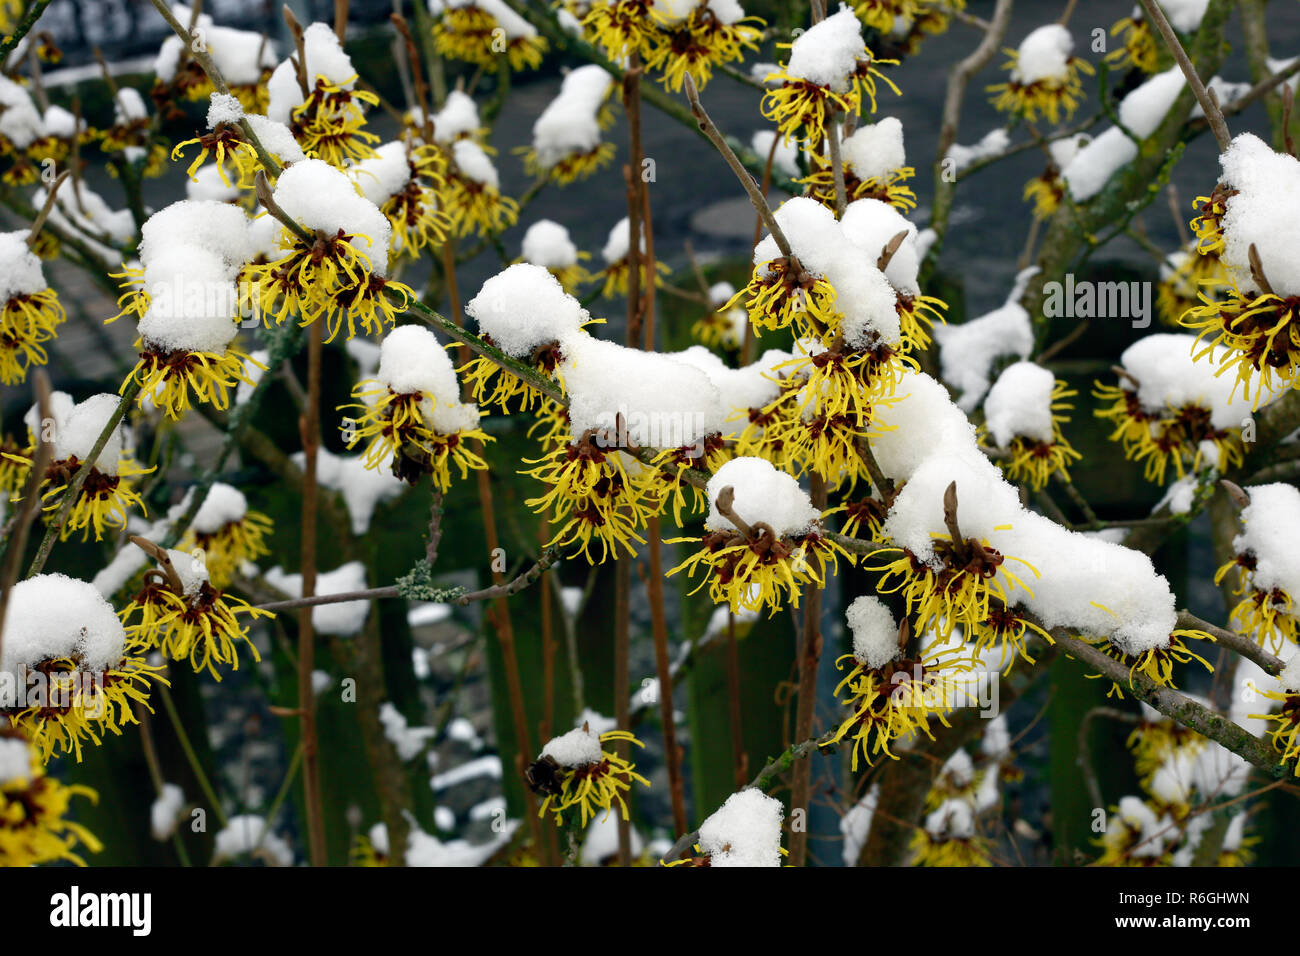 witch hazel (witch hazel),flowering shrub in january with snow hoods Stock Photo